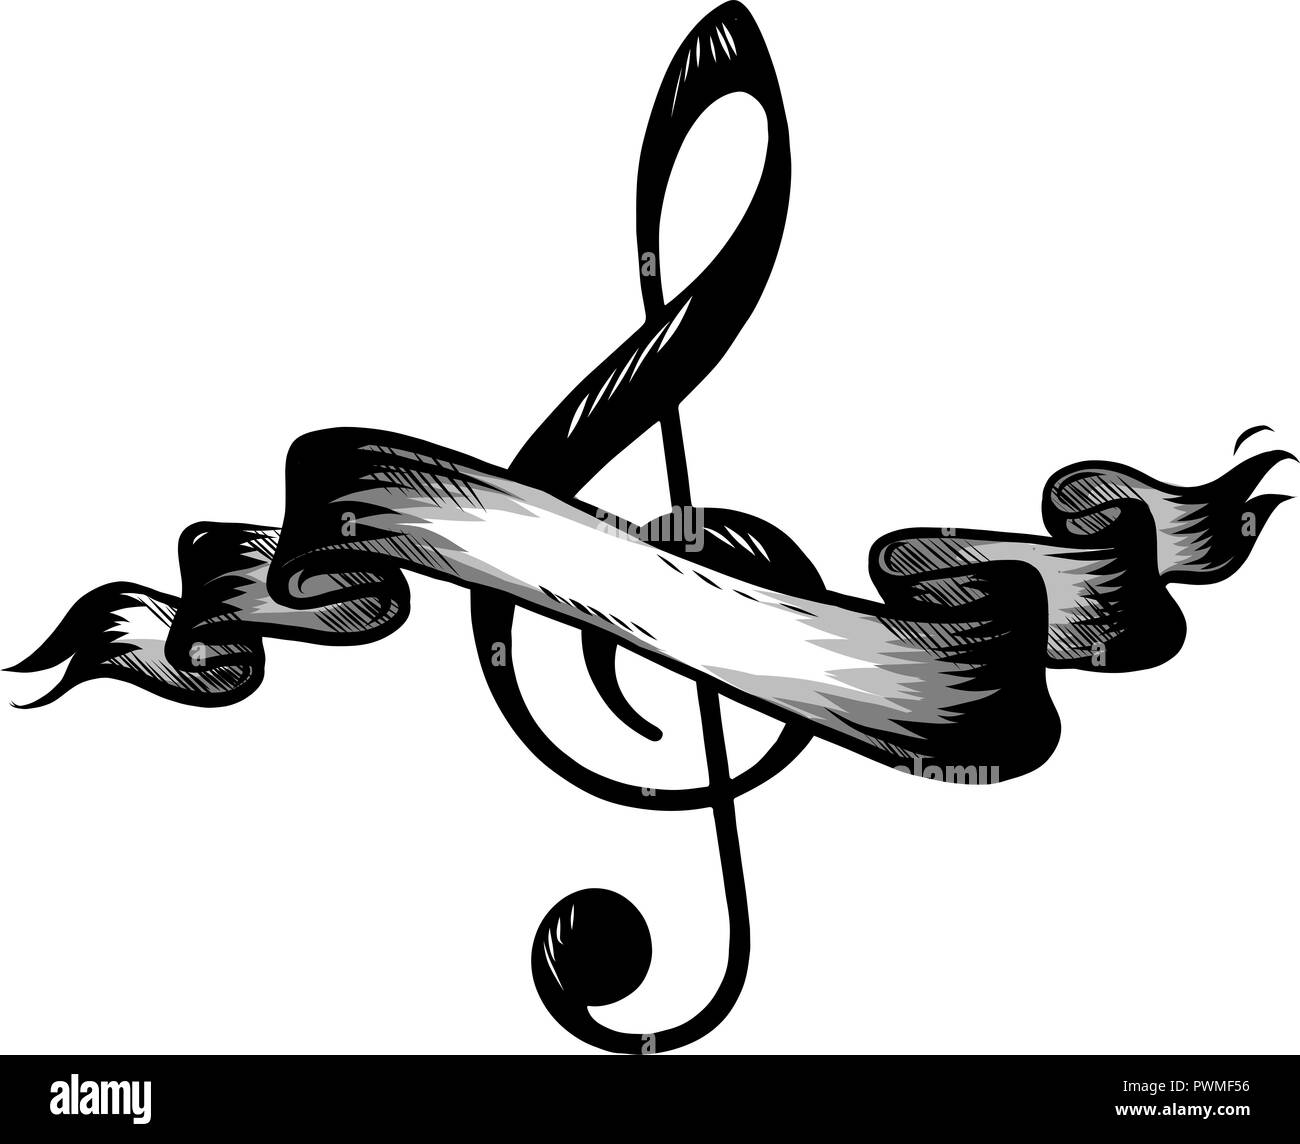 Musik, Noten, Lied, Melodie oder tune Flachbild Symbol für musikalische  Anwendungen und Webseiten Stockfotografie - Alamy